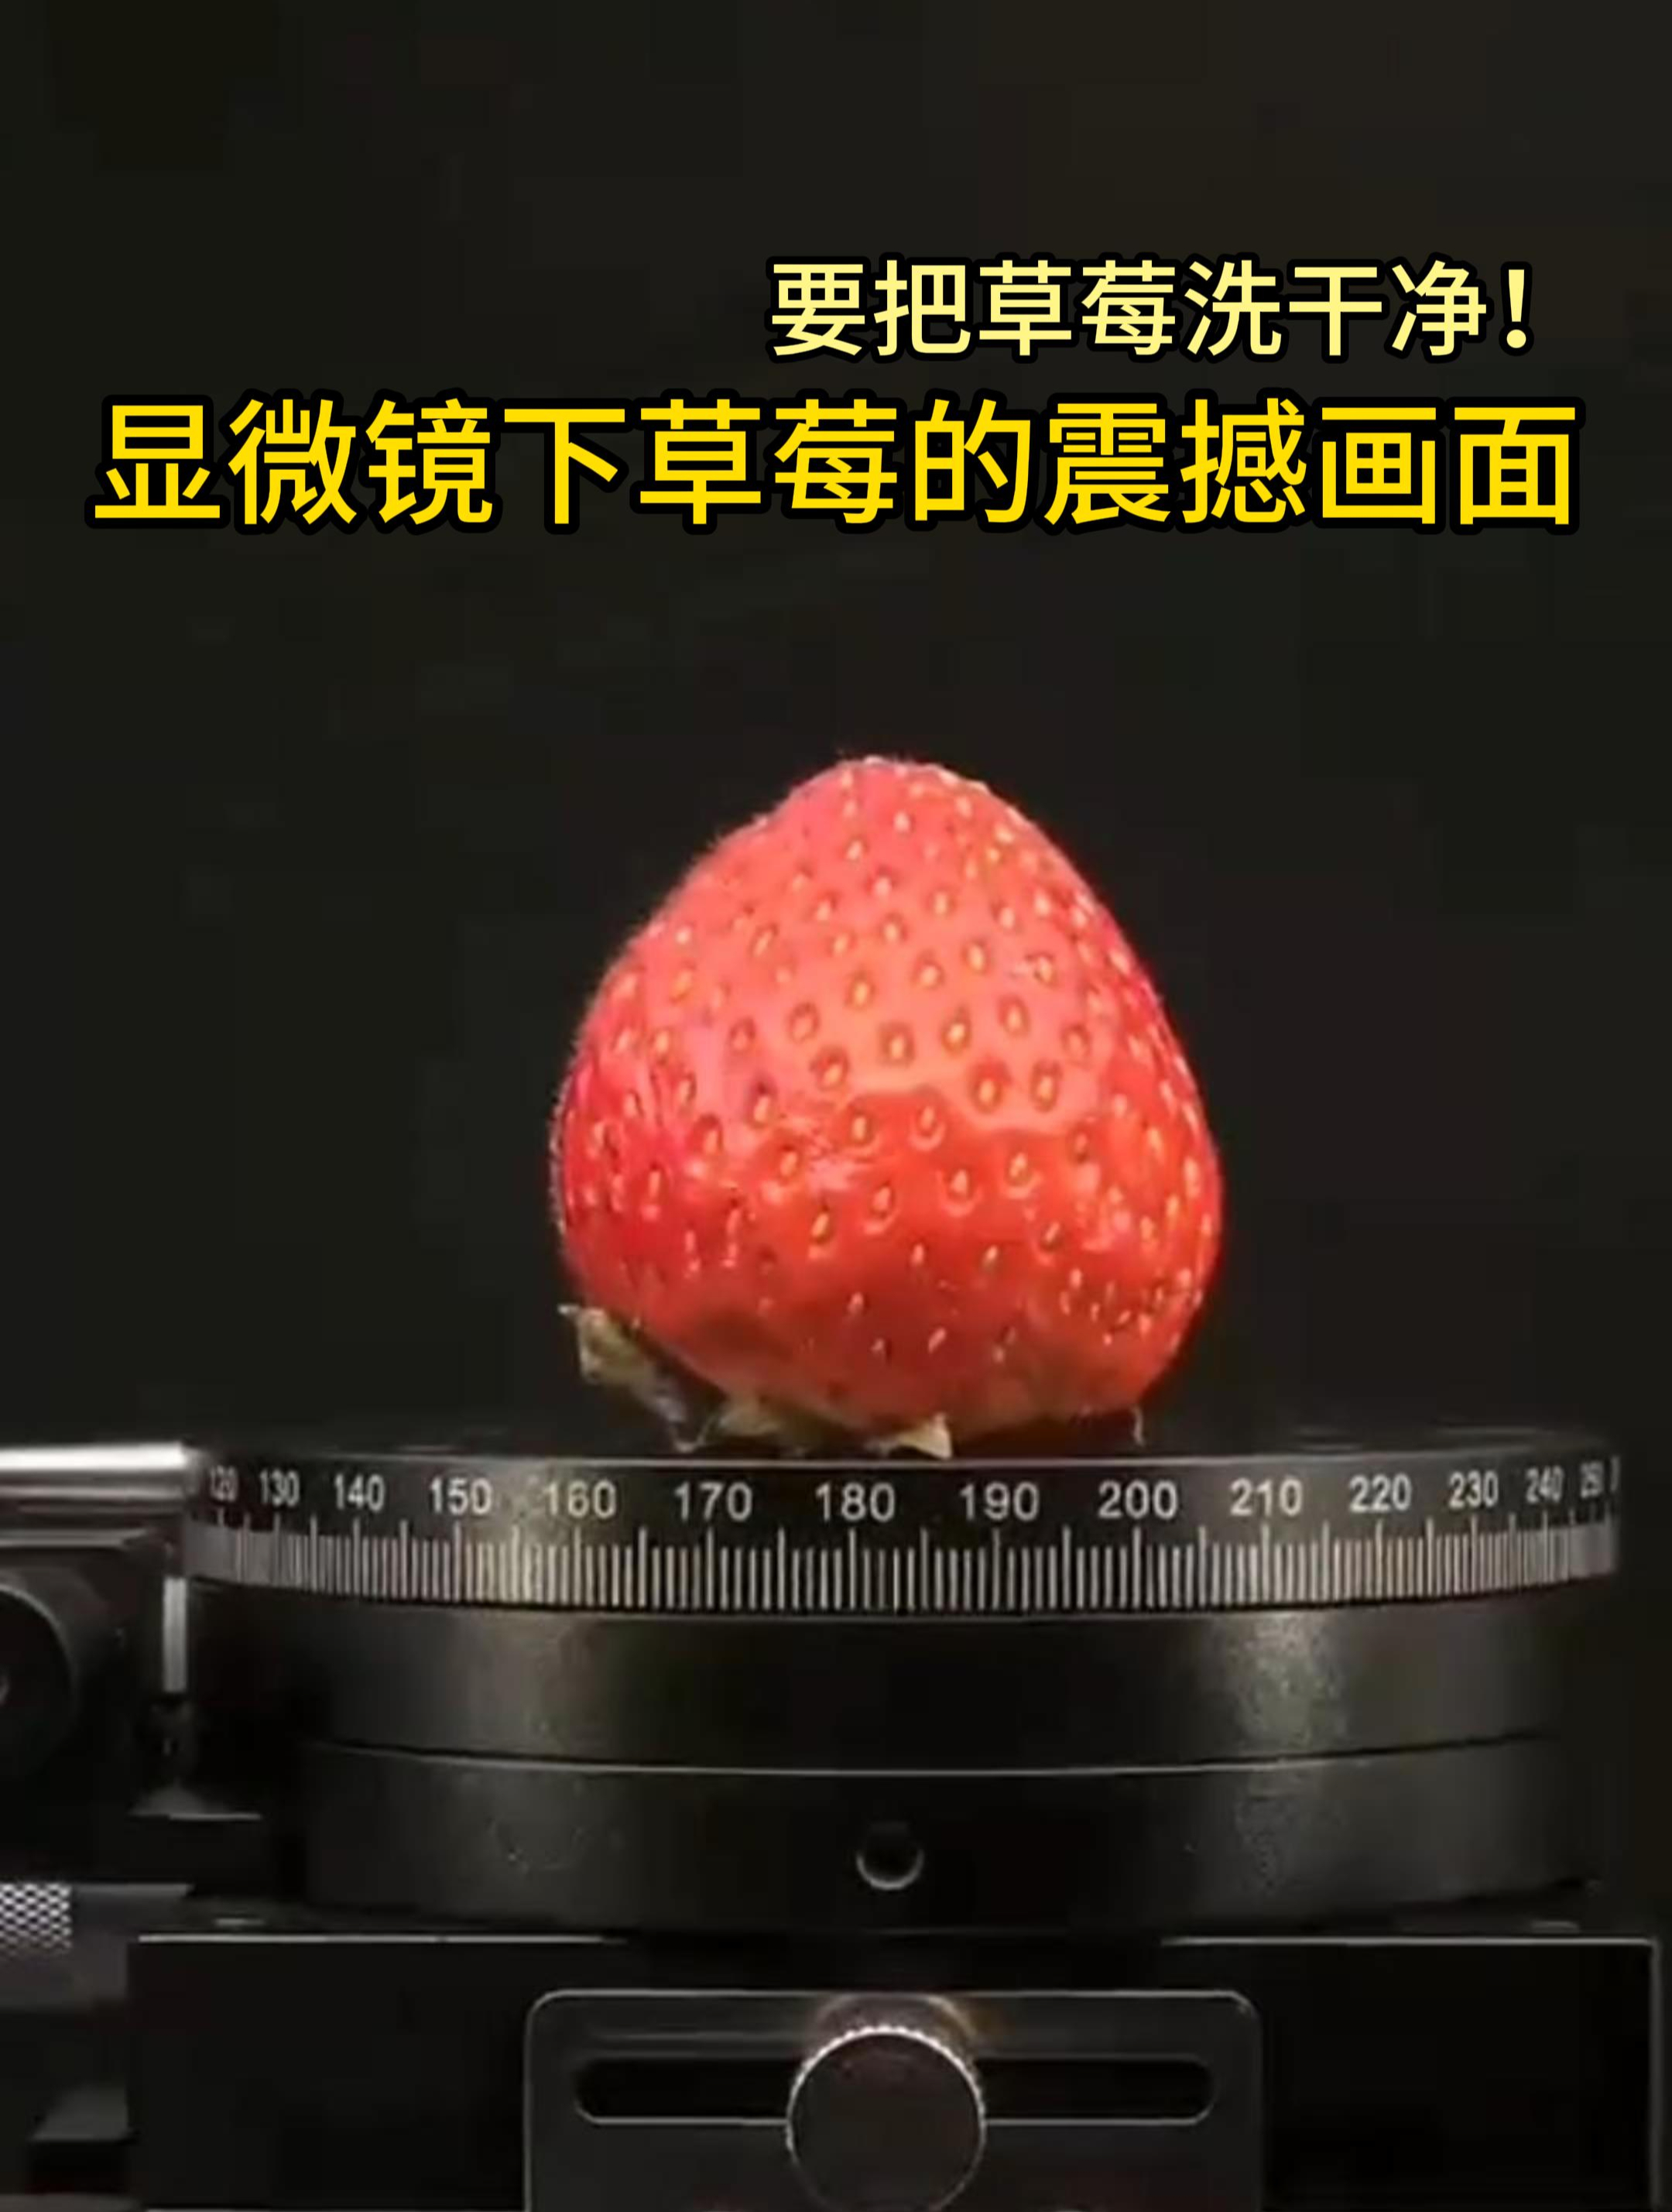 显微镜下的草莓图片